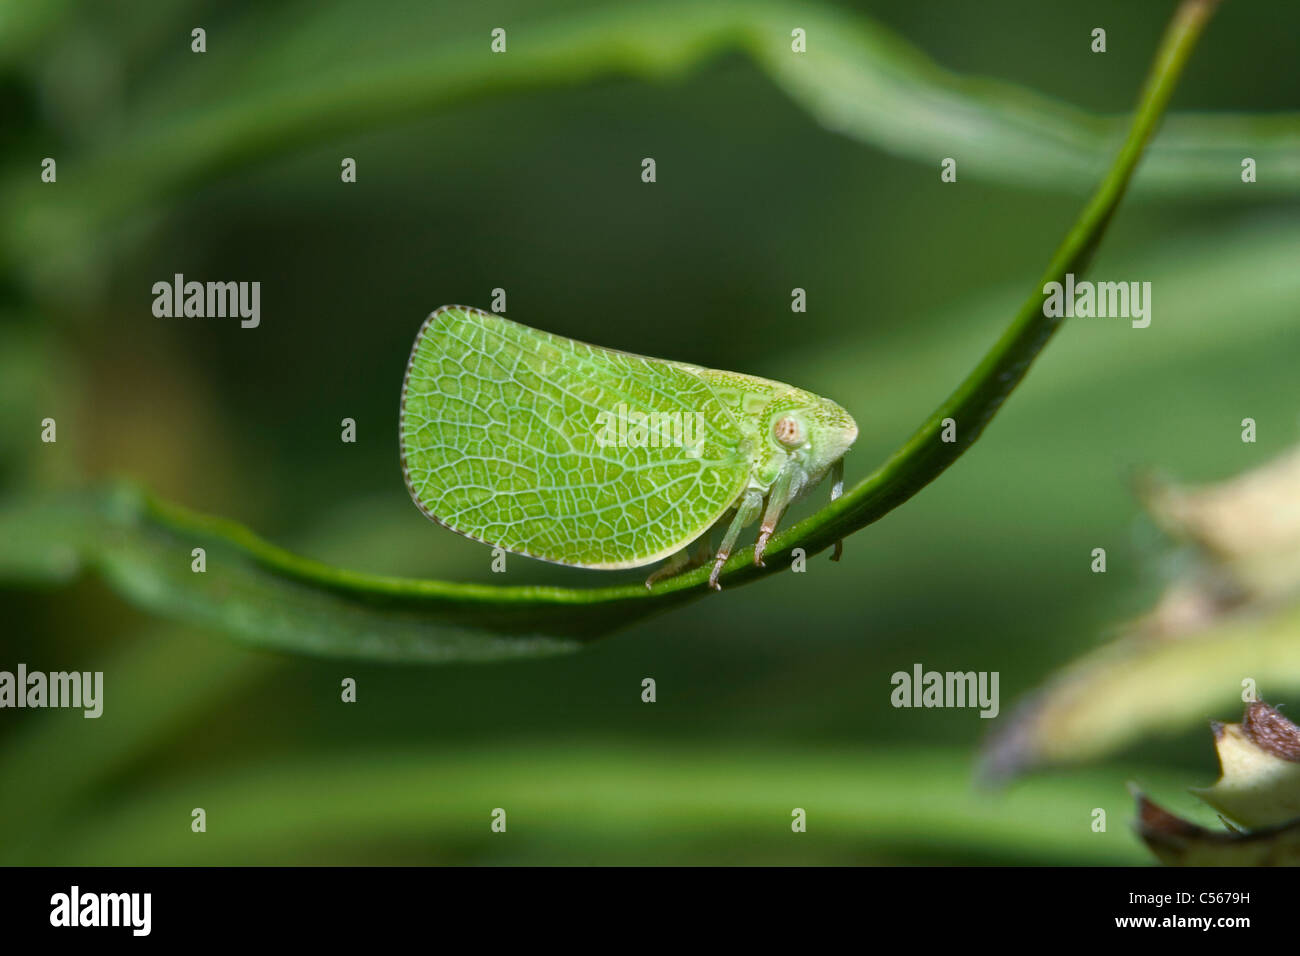 Un petit insecte, le feuilles cicadelle, Hopper, sur une feuille verte, Acanalonia conica, maîtres de l'Imitation Banque D'Images